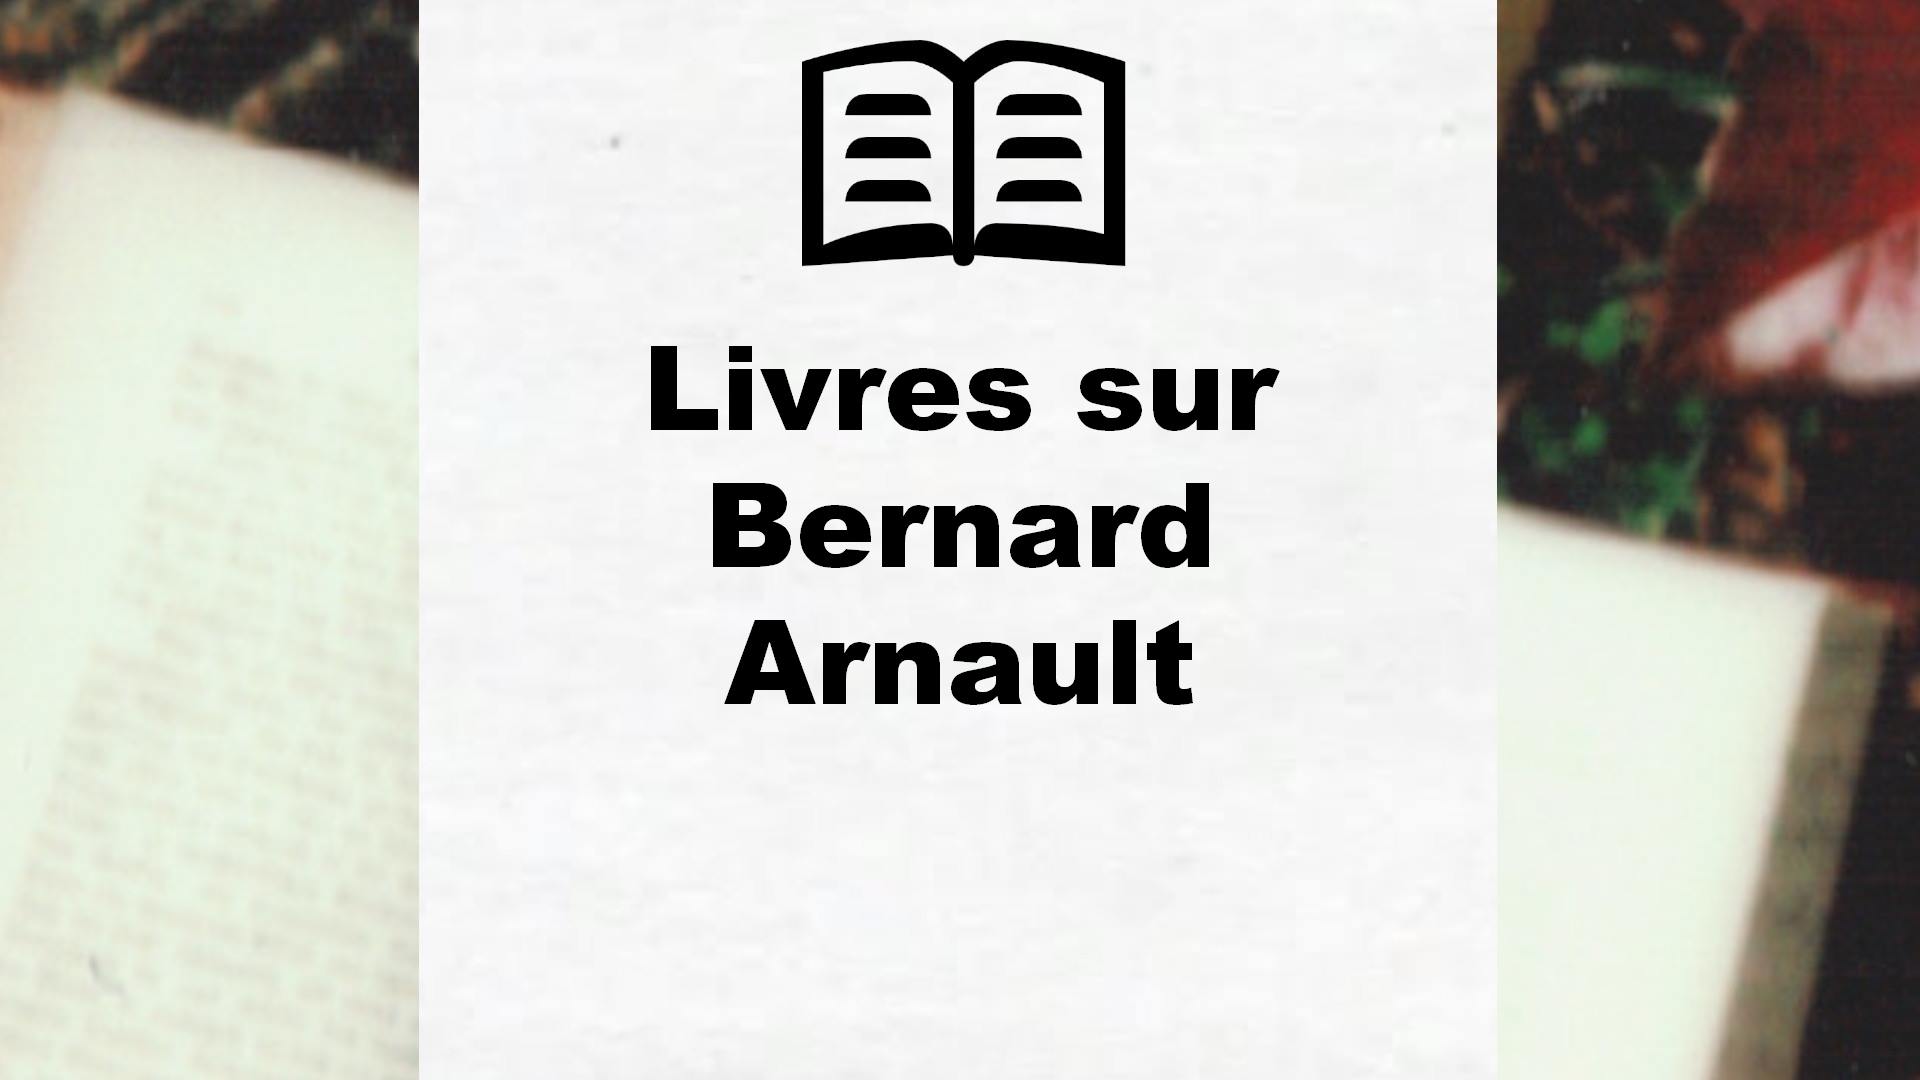 Livres sur Bernard Arnault